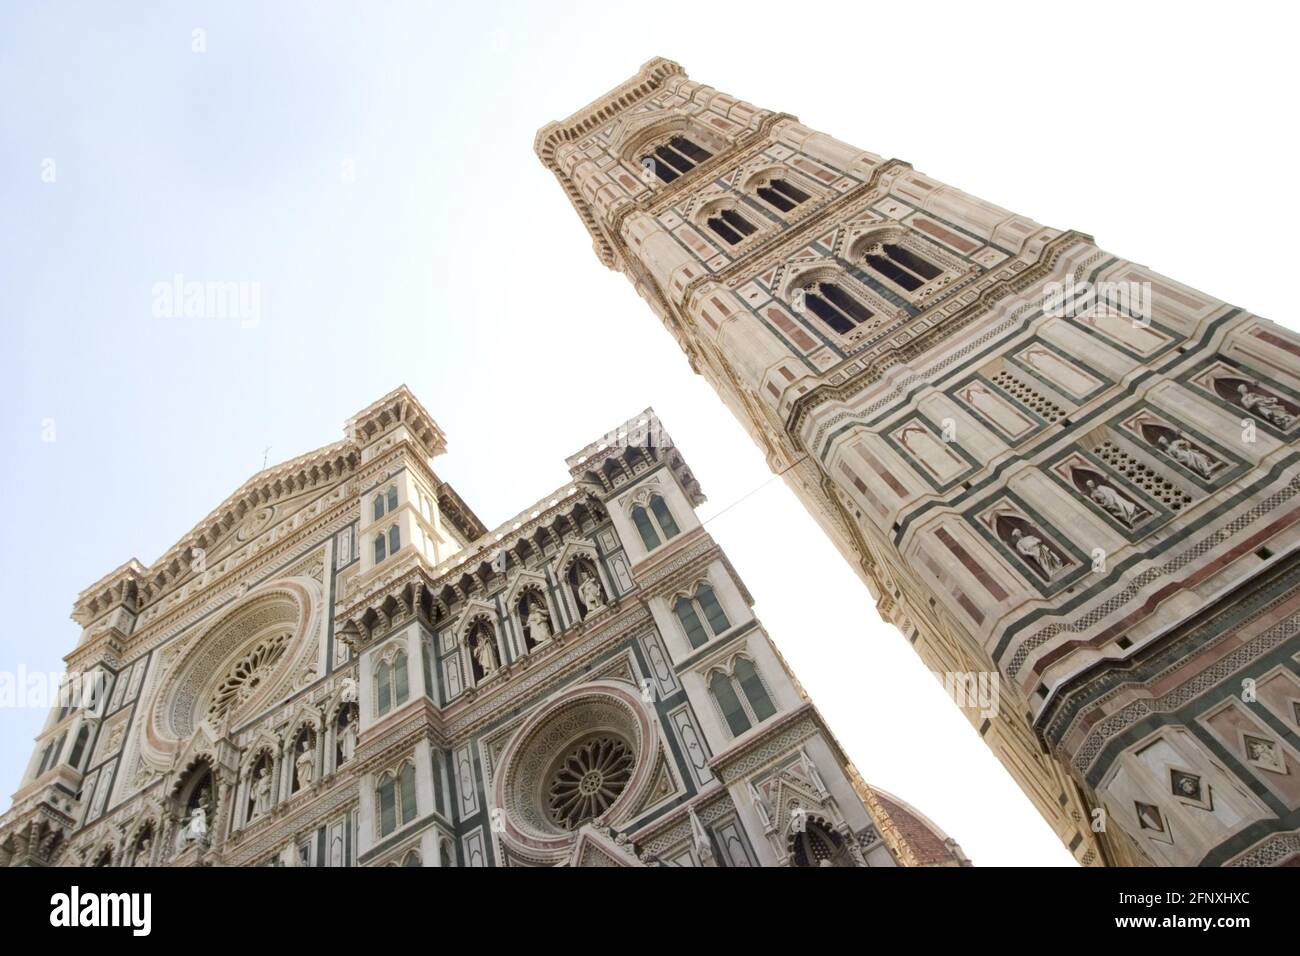 Campanile di Giotto, clocher de la cathédrale de Florence, Italie, Florence Banque D'Images